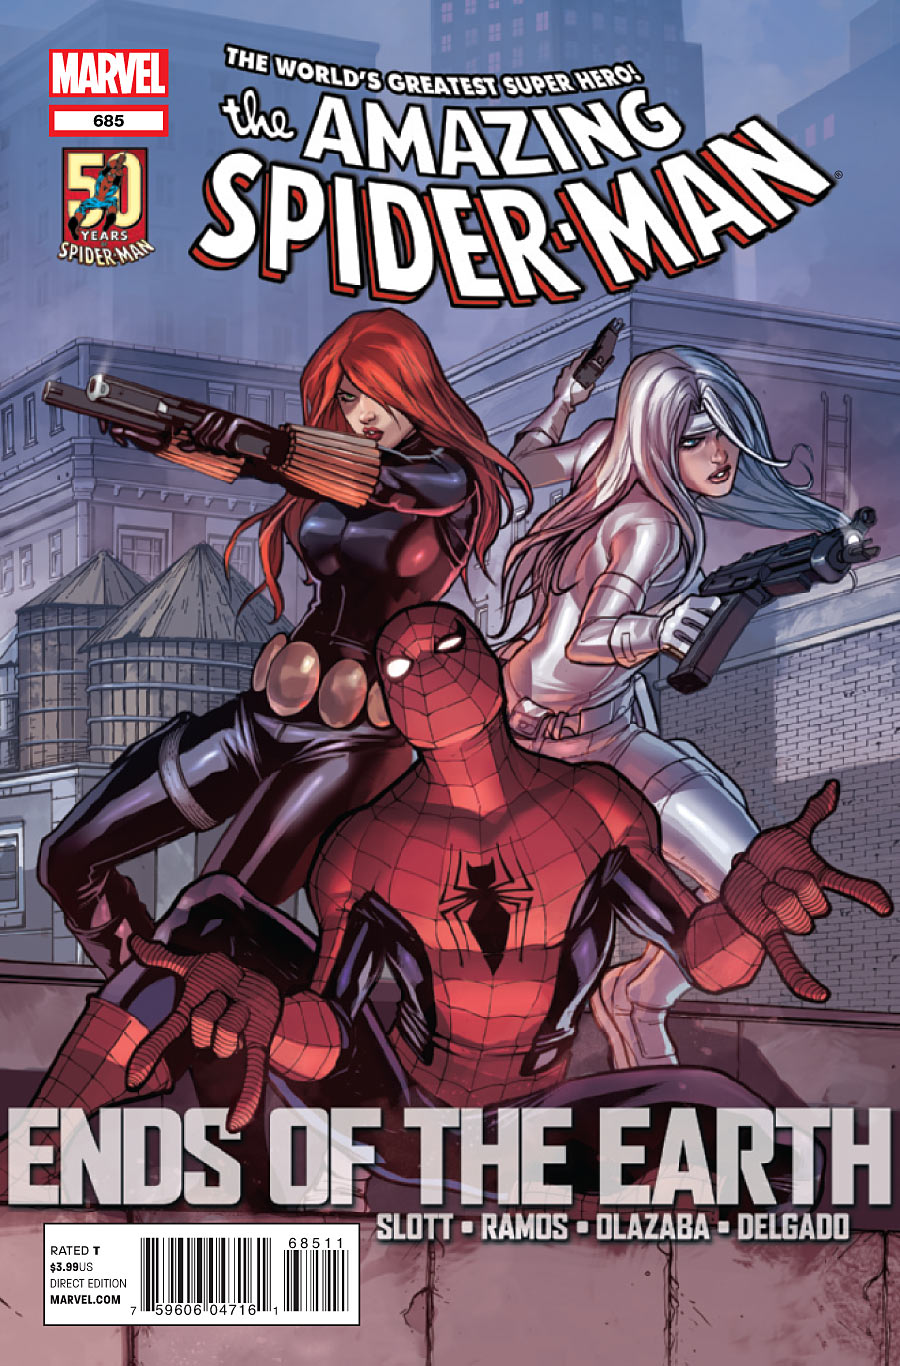 Amazing Spider-Man Vol. 1 #685